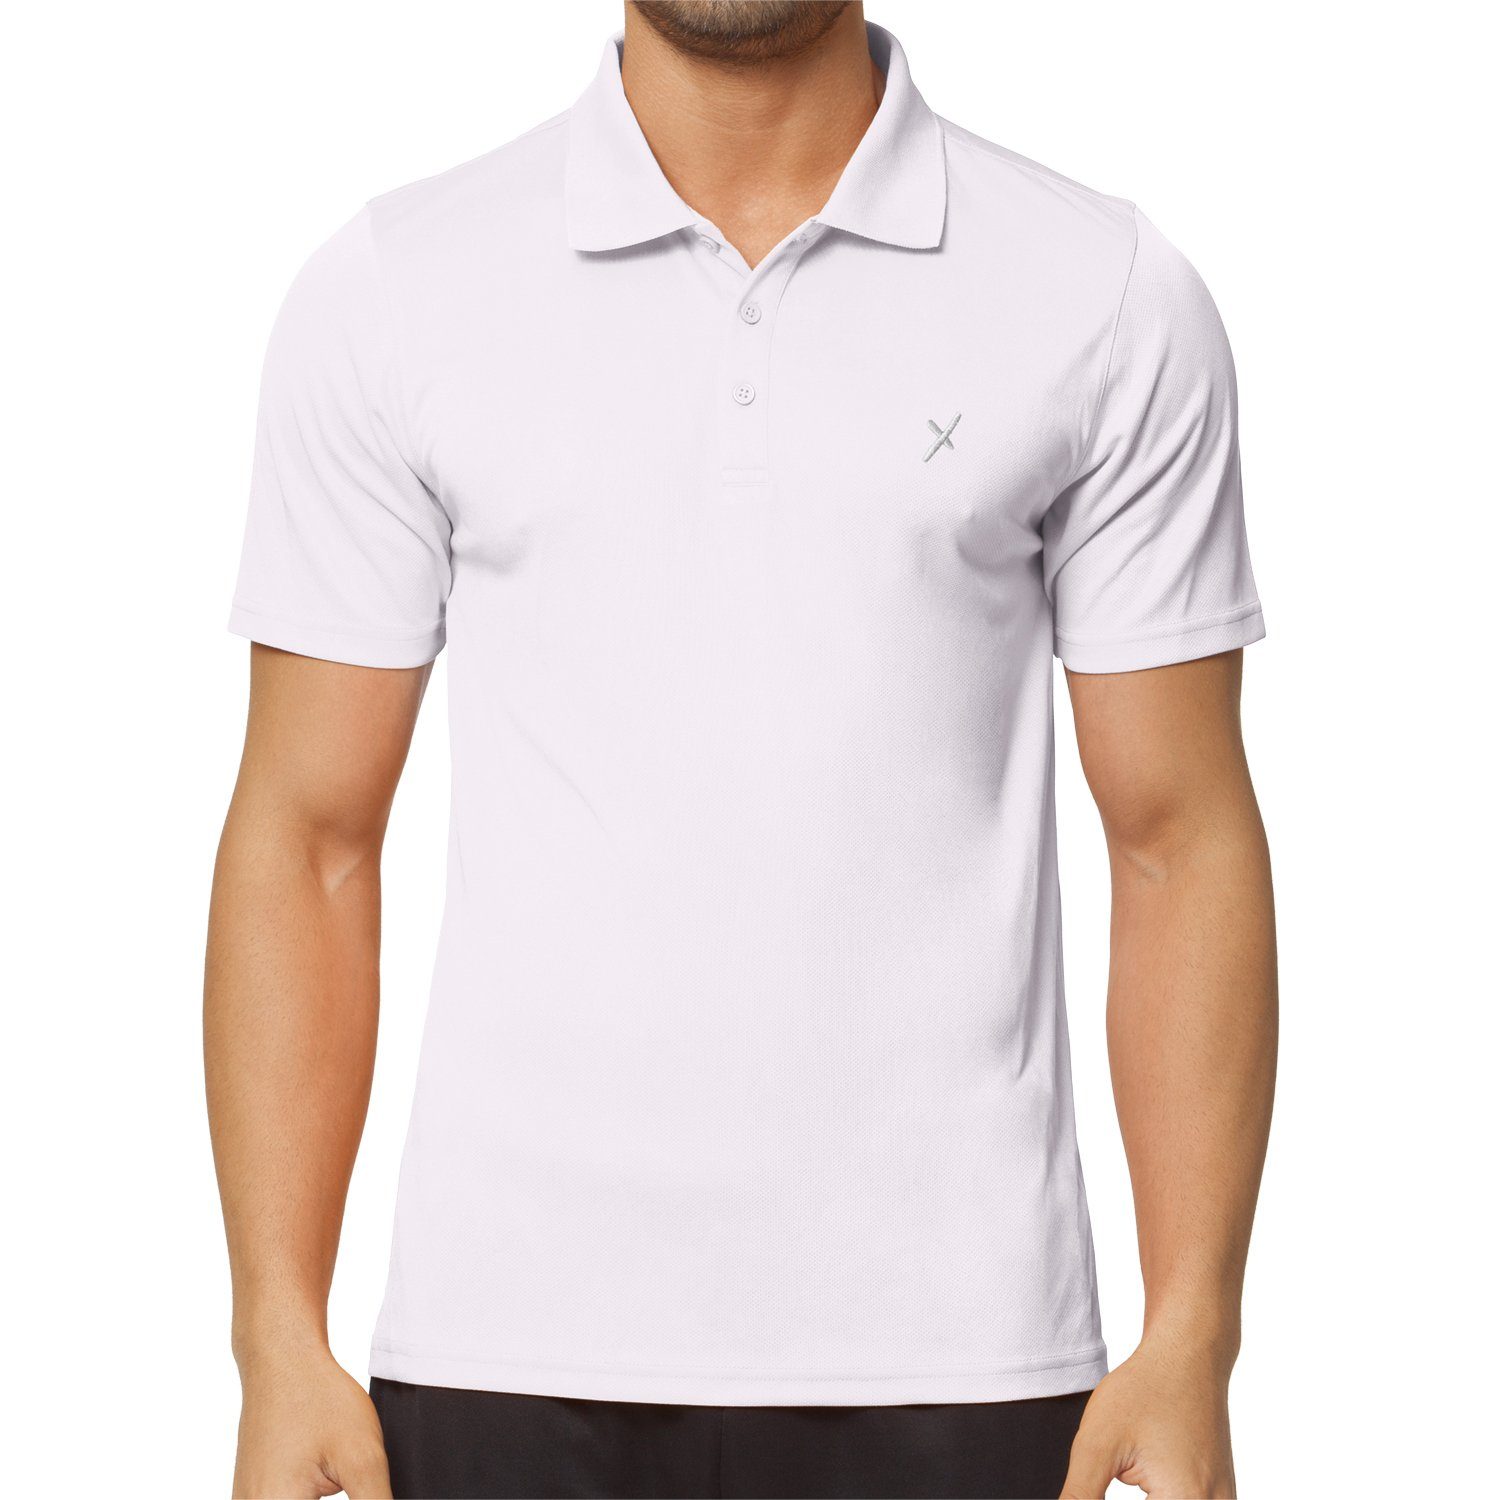 CFLEX Trainingsshirt Herren Sport Shirt Fitness Polo-Shirt Sportswear Collection Weiß